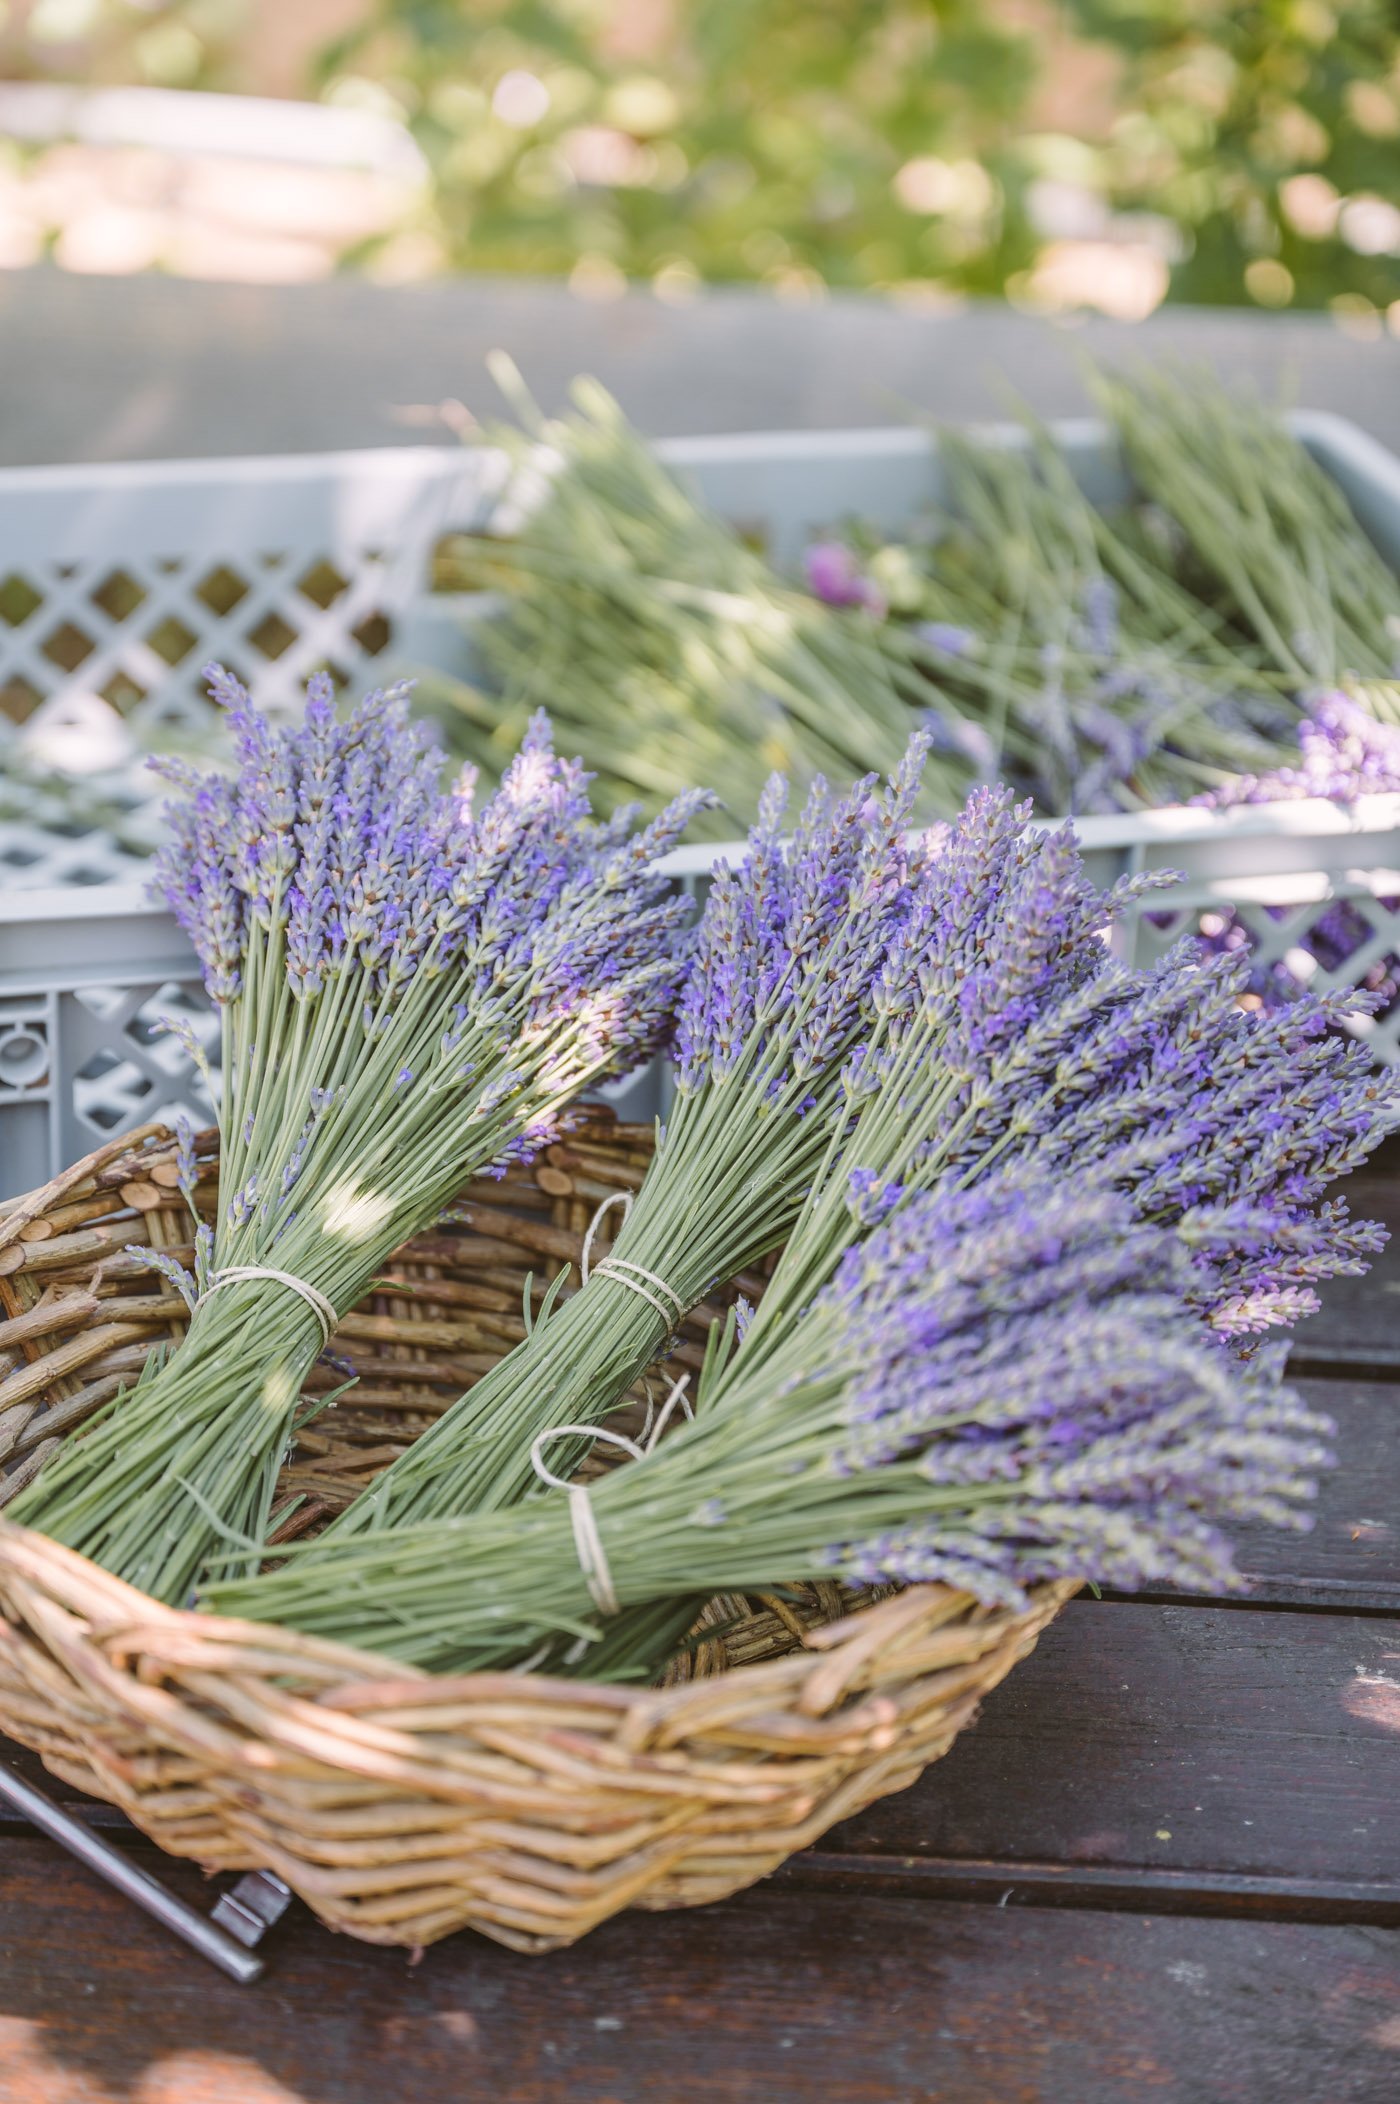 Lavender harvest at Lavender manufacturer Wunsum in Southern Styria